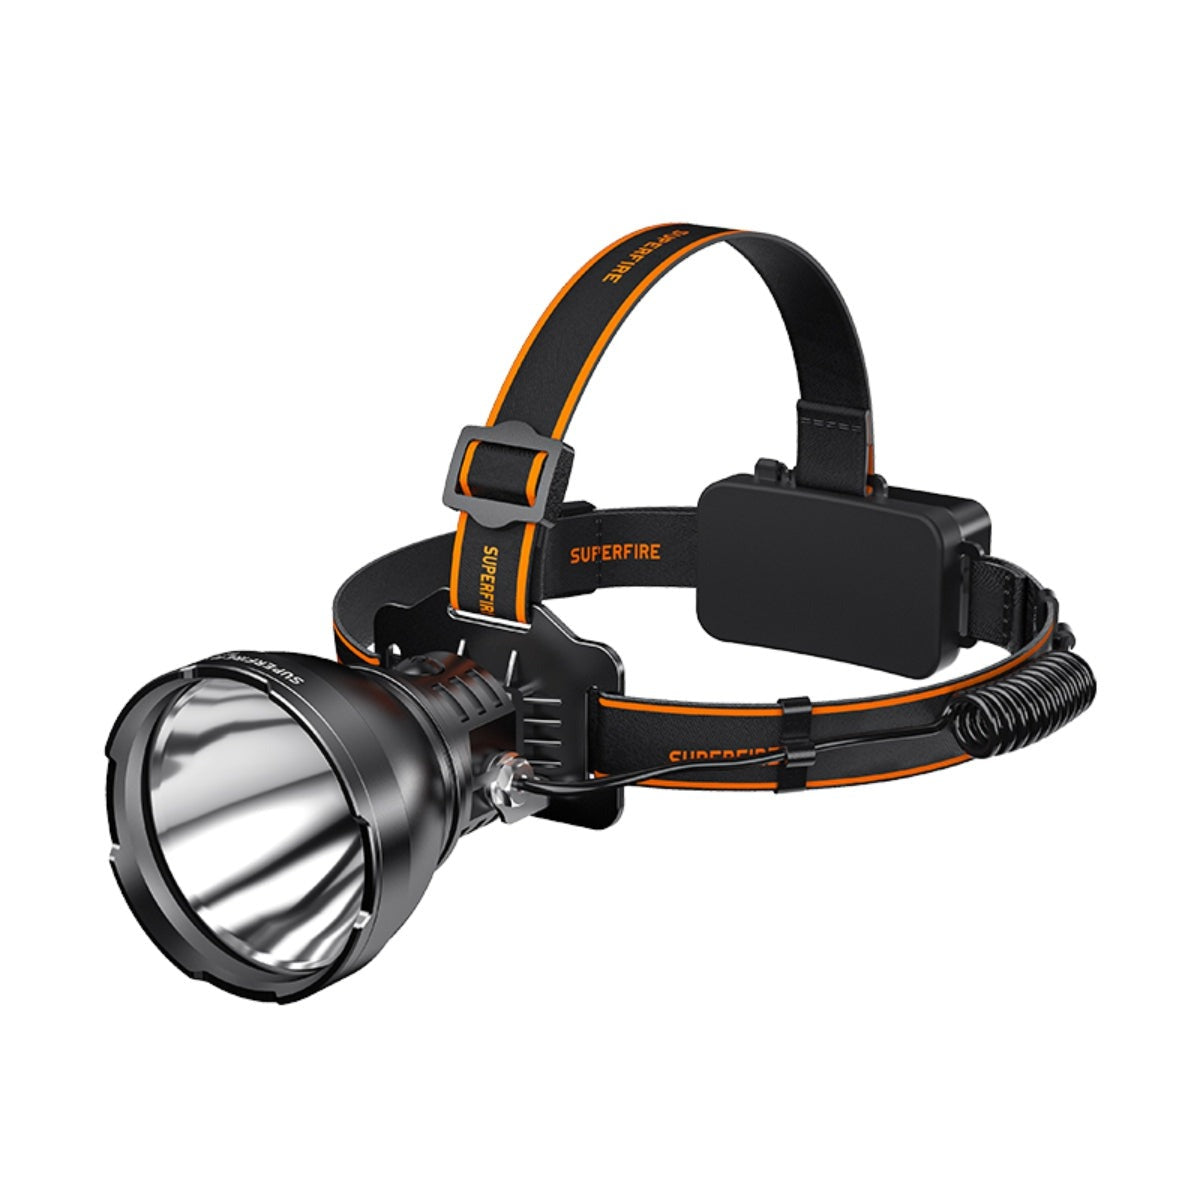 Lampe frontale rechargeable super lumineuse Lampe frontale LED portable Lampe de travail à batterie intégrée Torche de camping de pêche | SUPERFEU HL60 